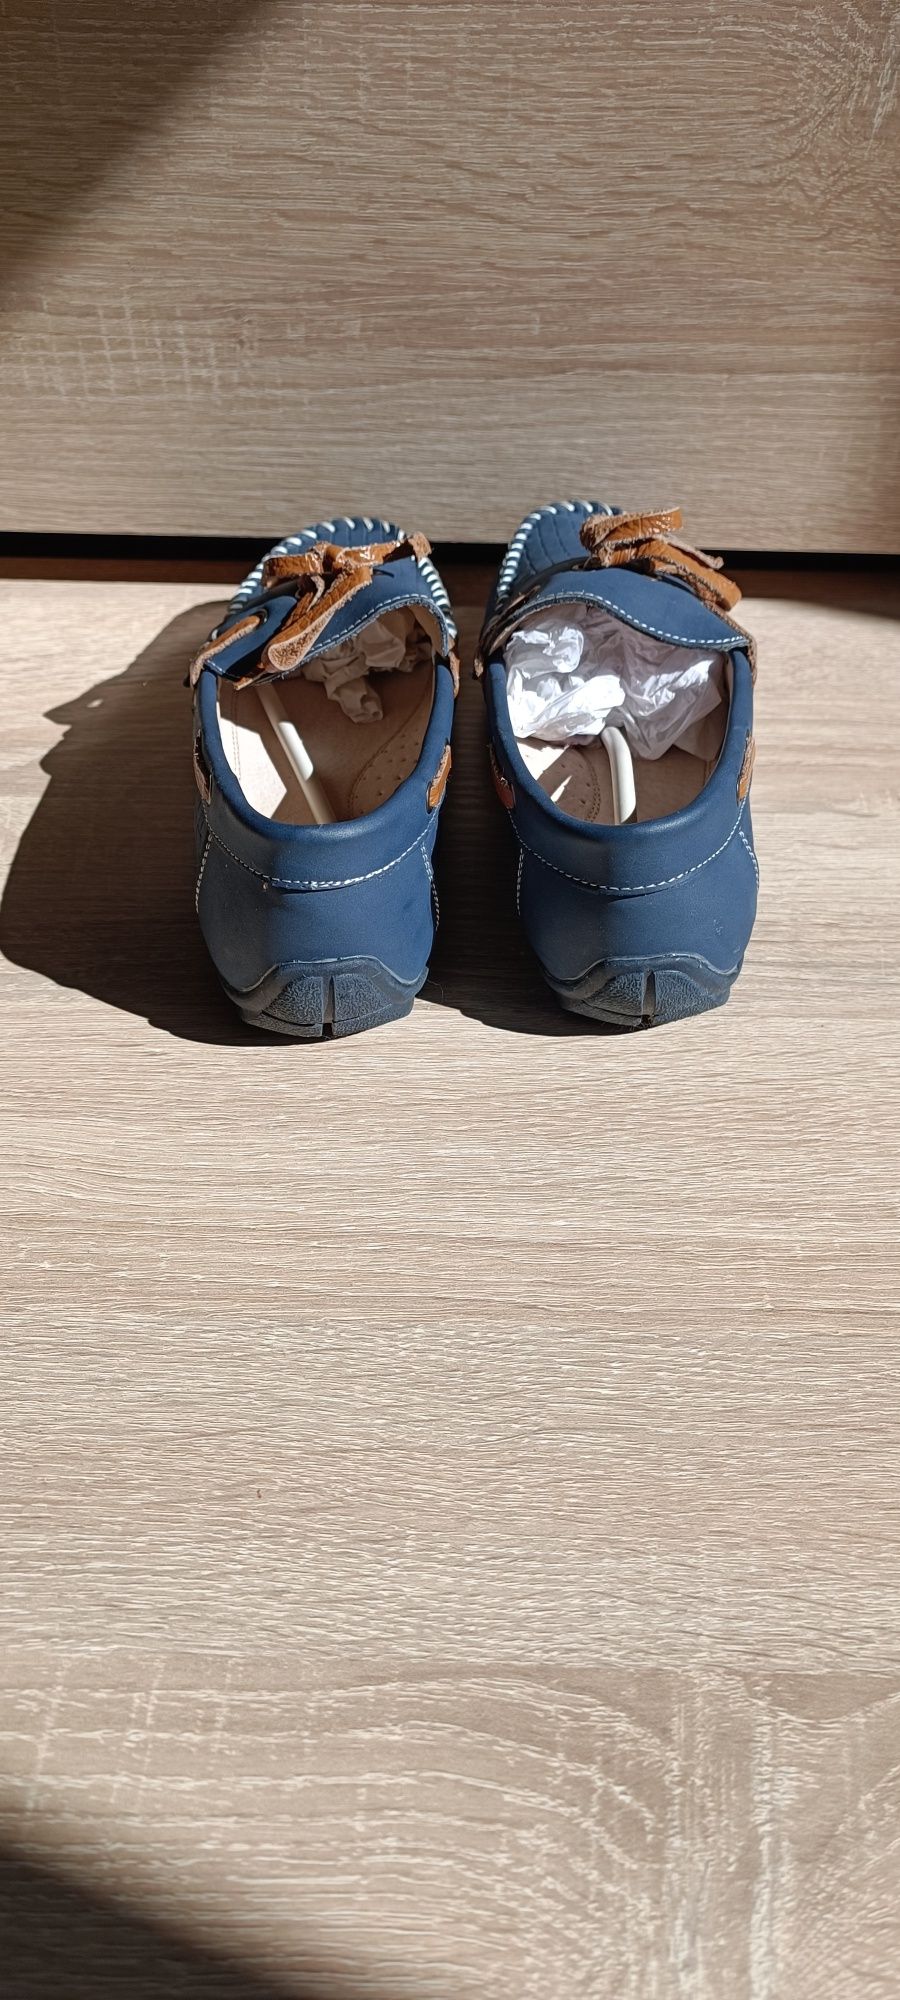 Макасини туфлі для хлопчика